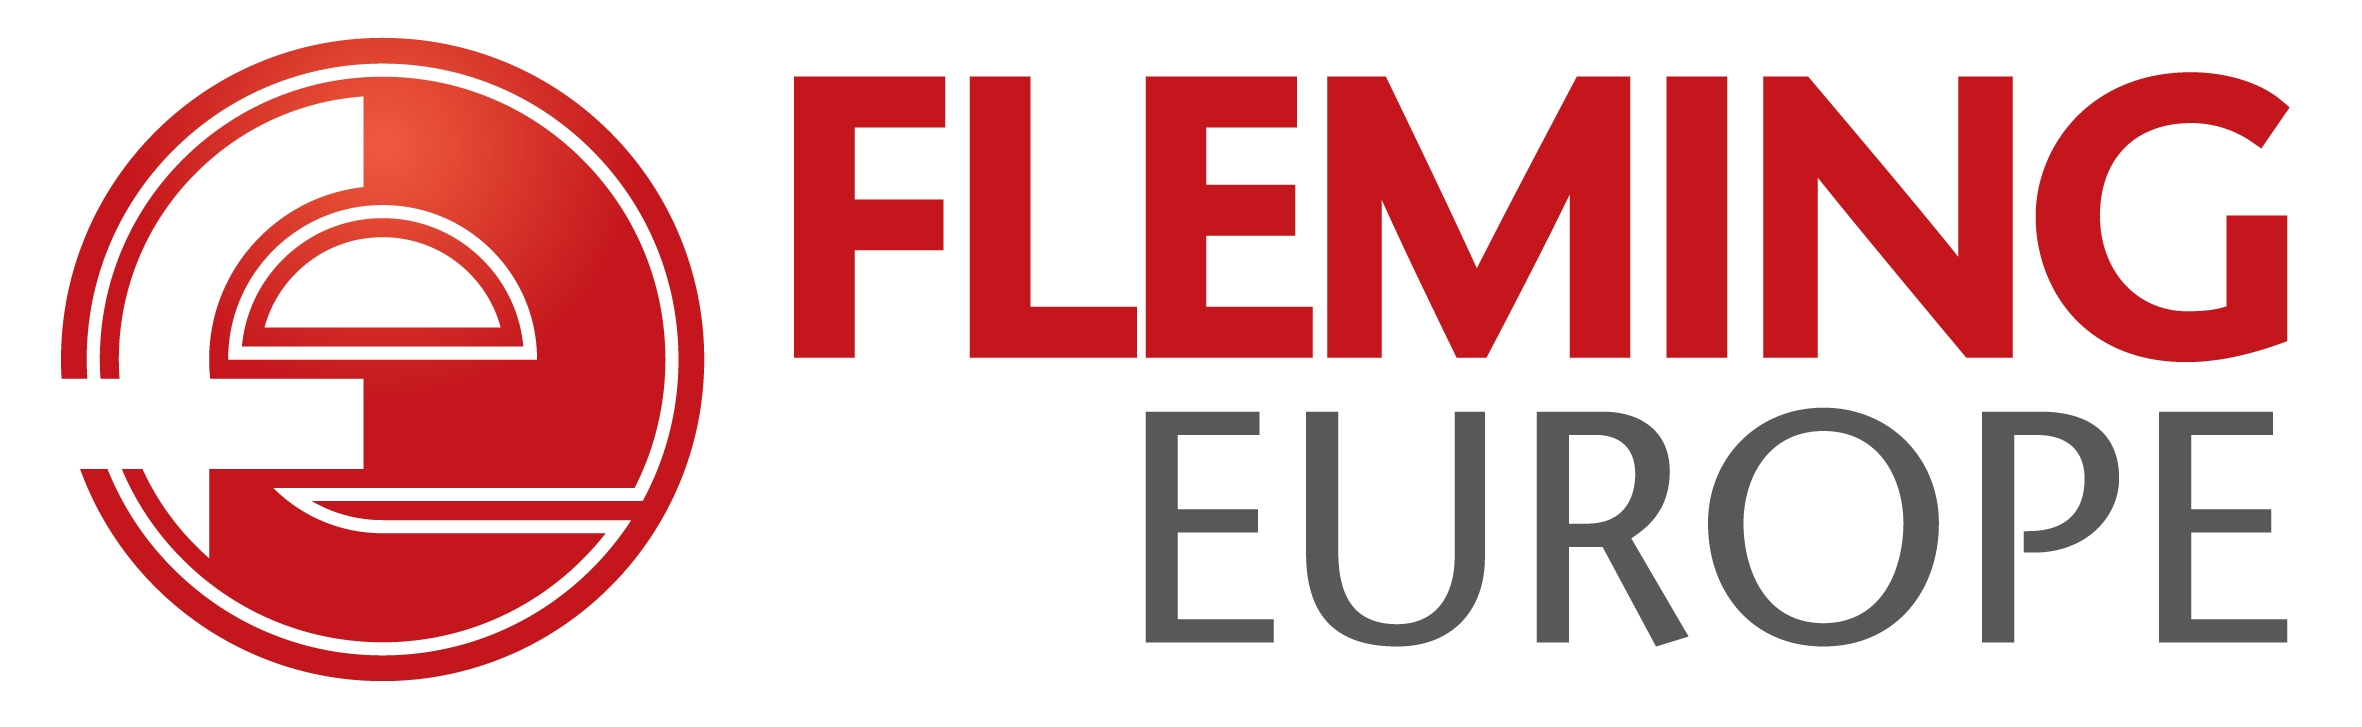 Fleming Europe